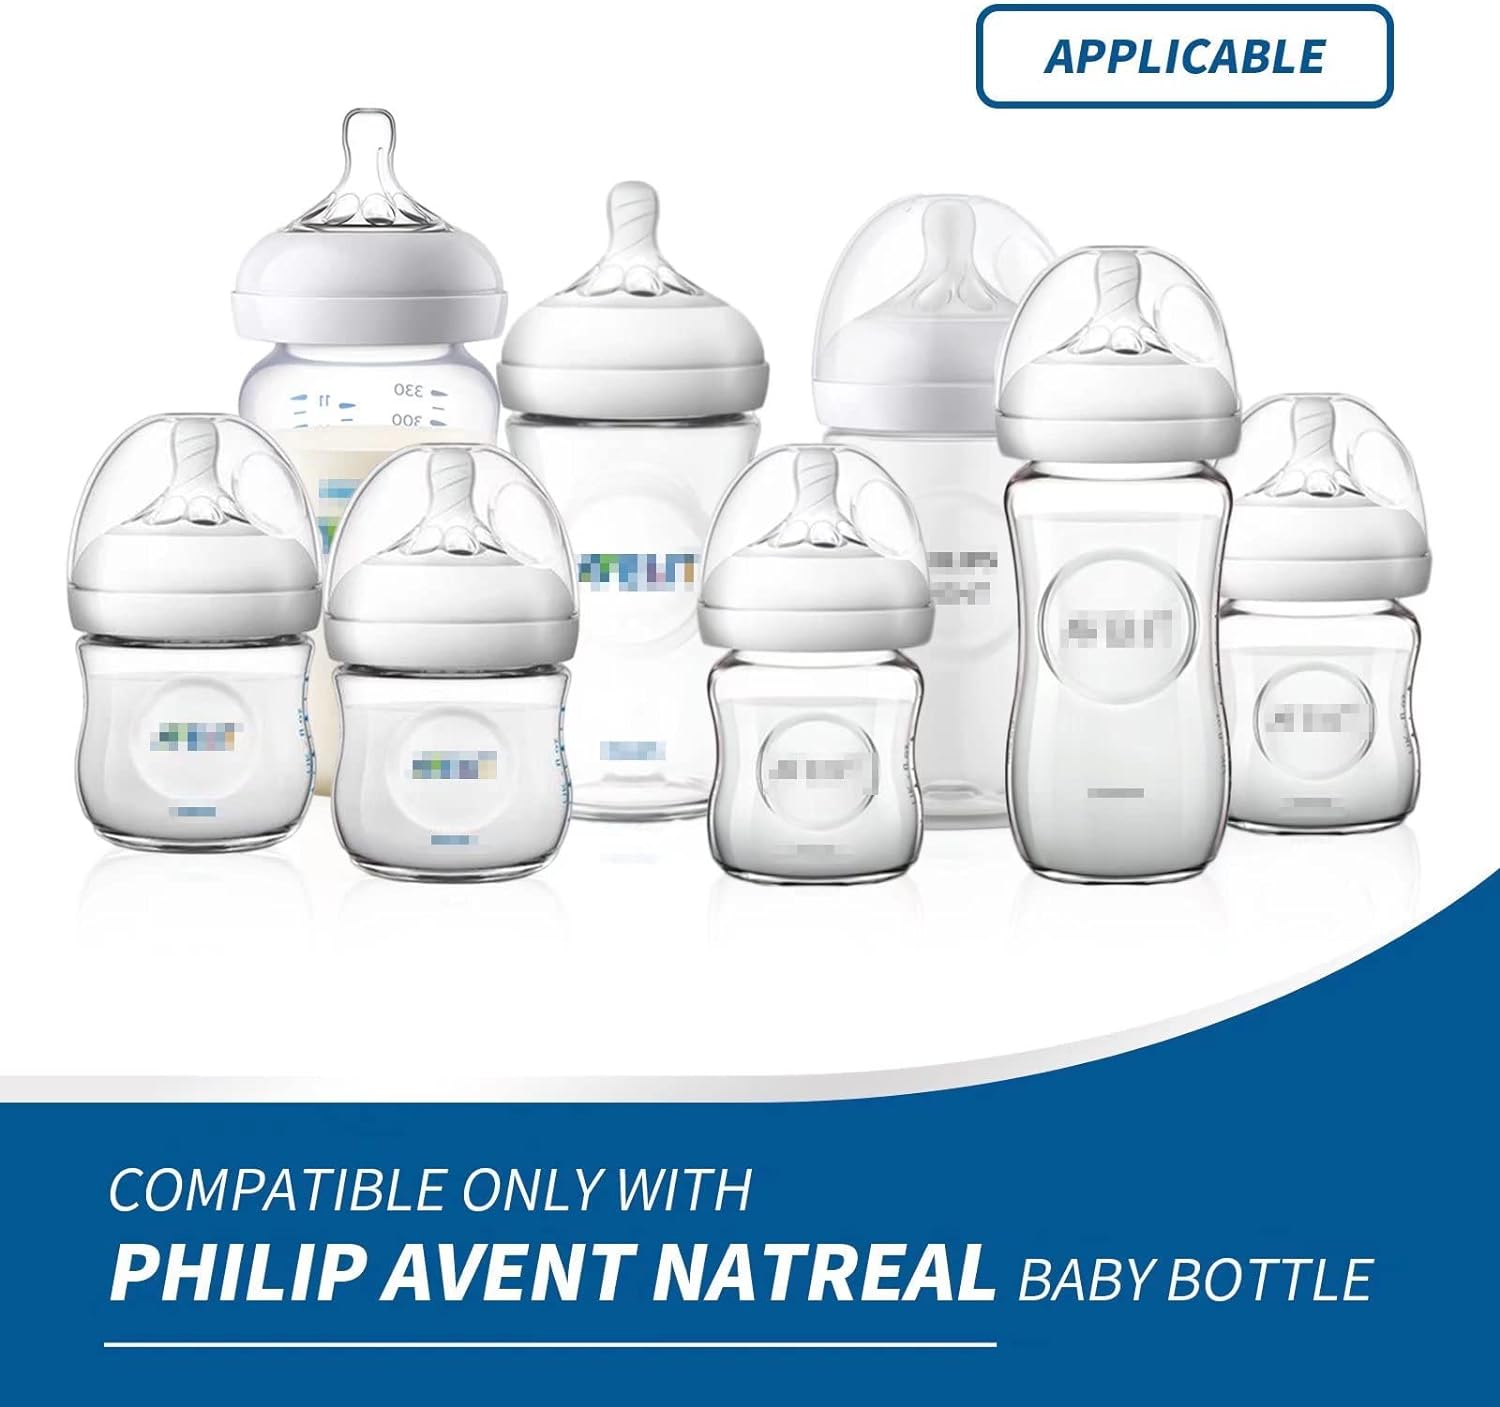 عبوة من 4 قطع متوافقة مع مقابض زجاجات الرضاعة الطبيعية من فيليبس افينت، حامل زجاجات الرضاعة - ابيض